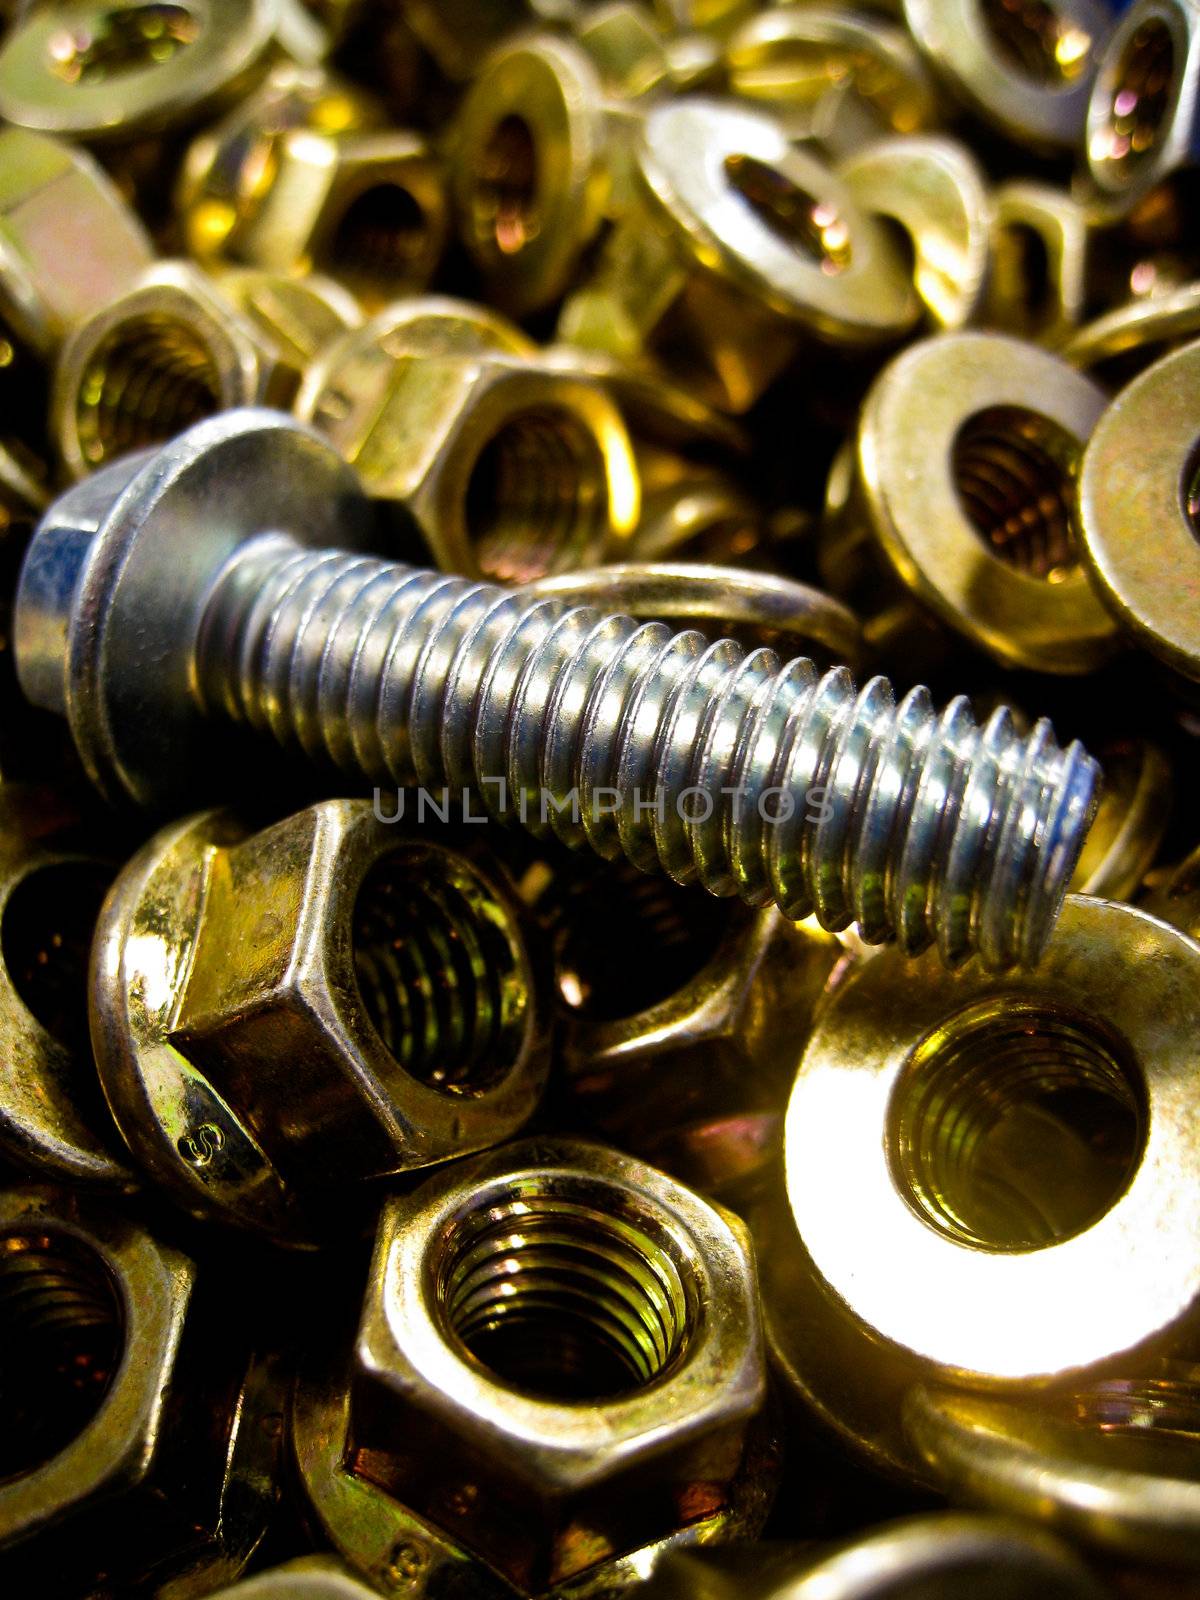 A bolt in lots of brass nuts by gjeerawut